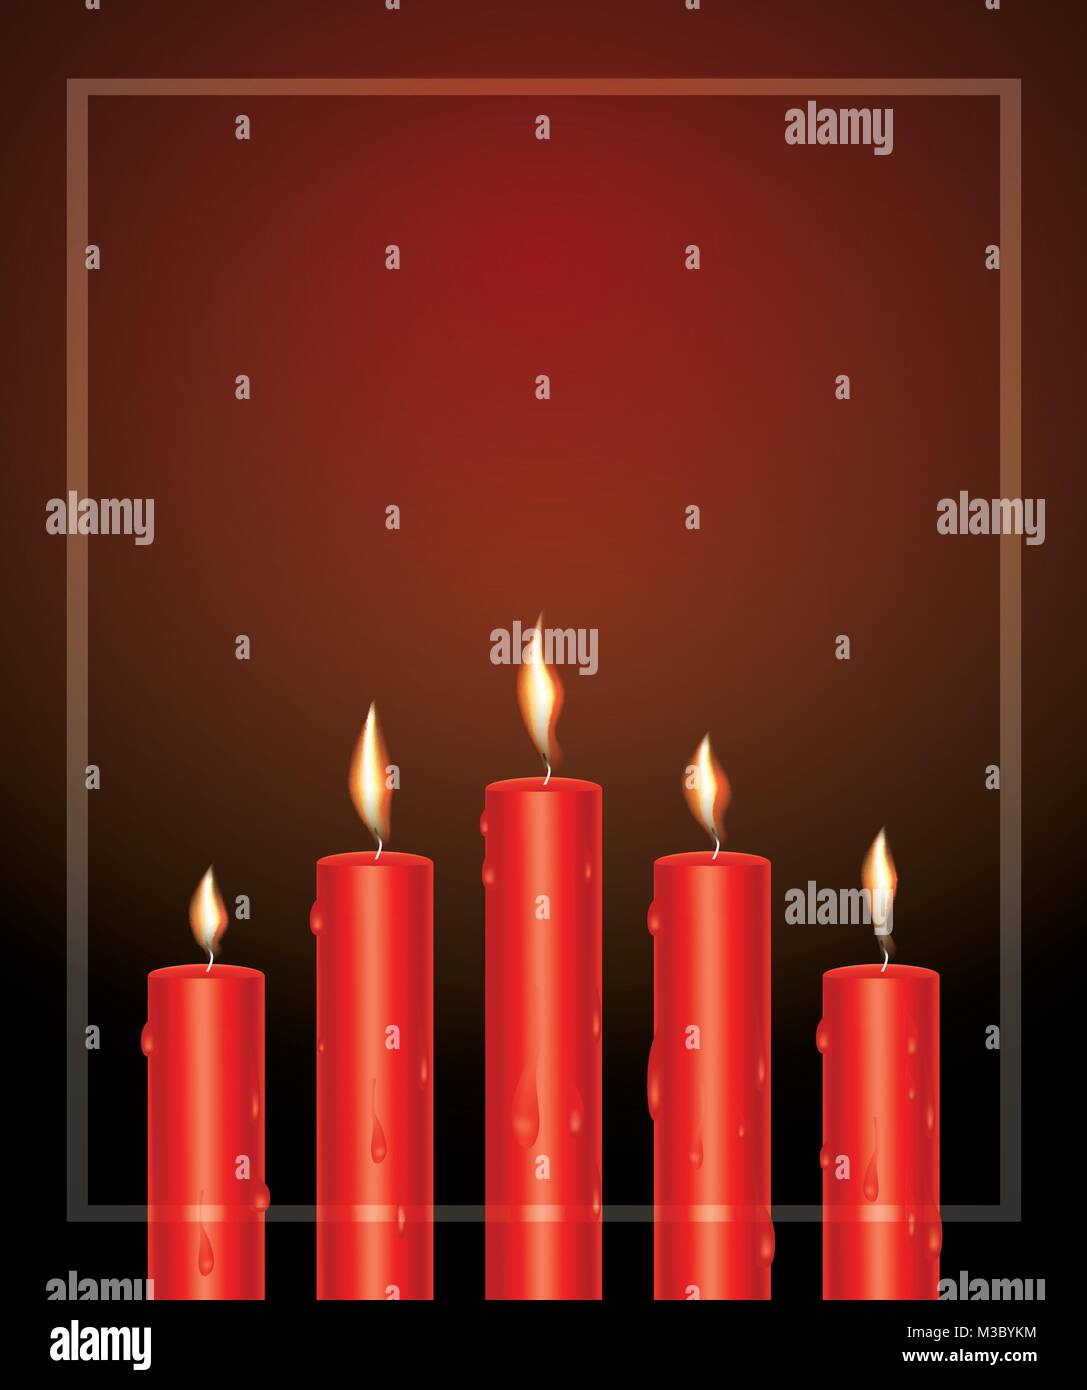 Realistische Rot leuchtende Kerzen mit geschmolzenem Wachs und Rahmen. Vector Illustration. Stock Vektor